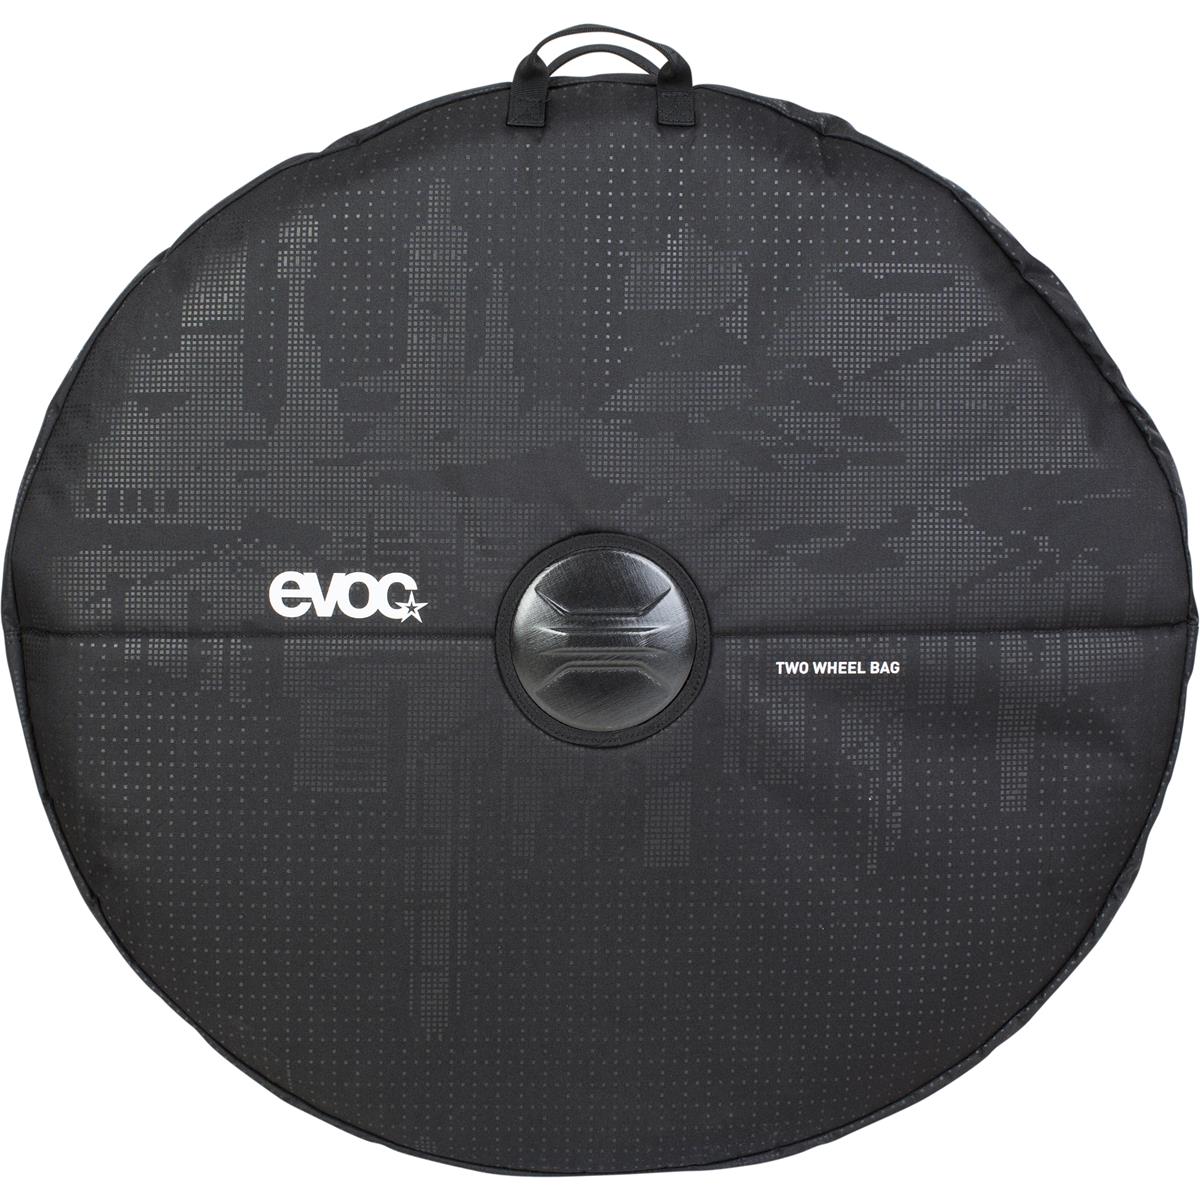 Evoc Transporttasche für 2 Laufräder Two Wheel Bag